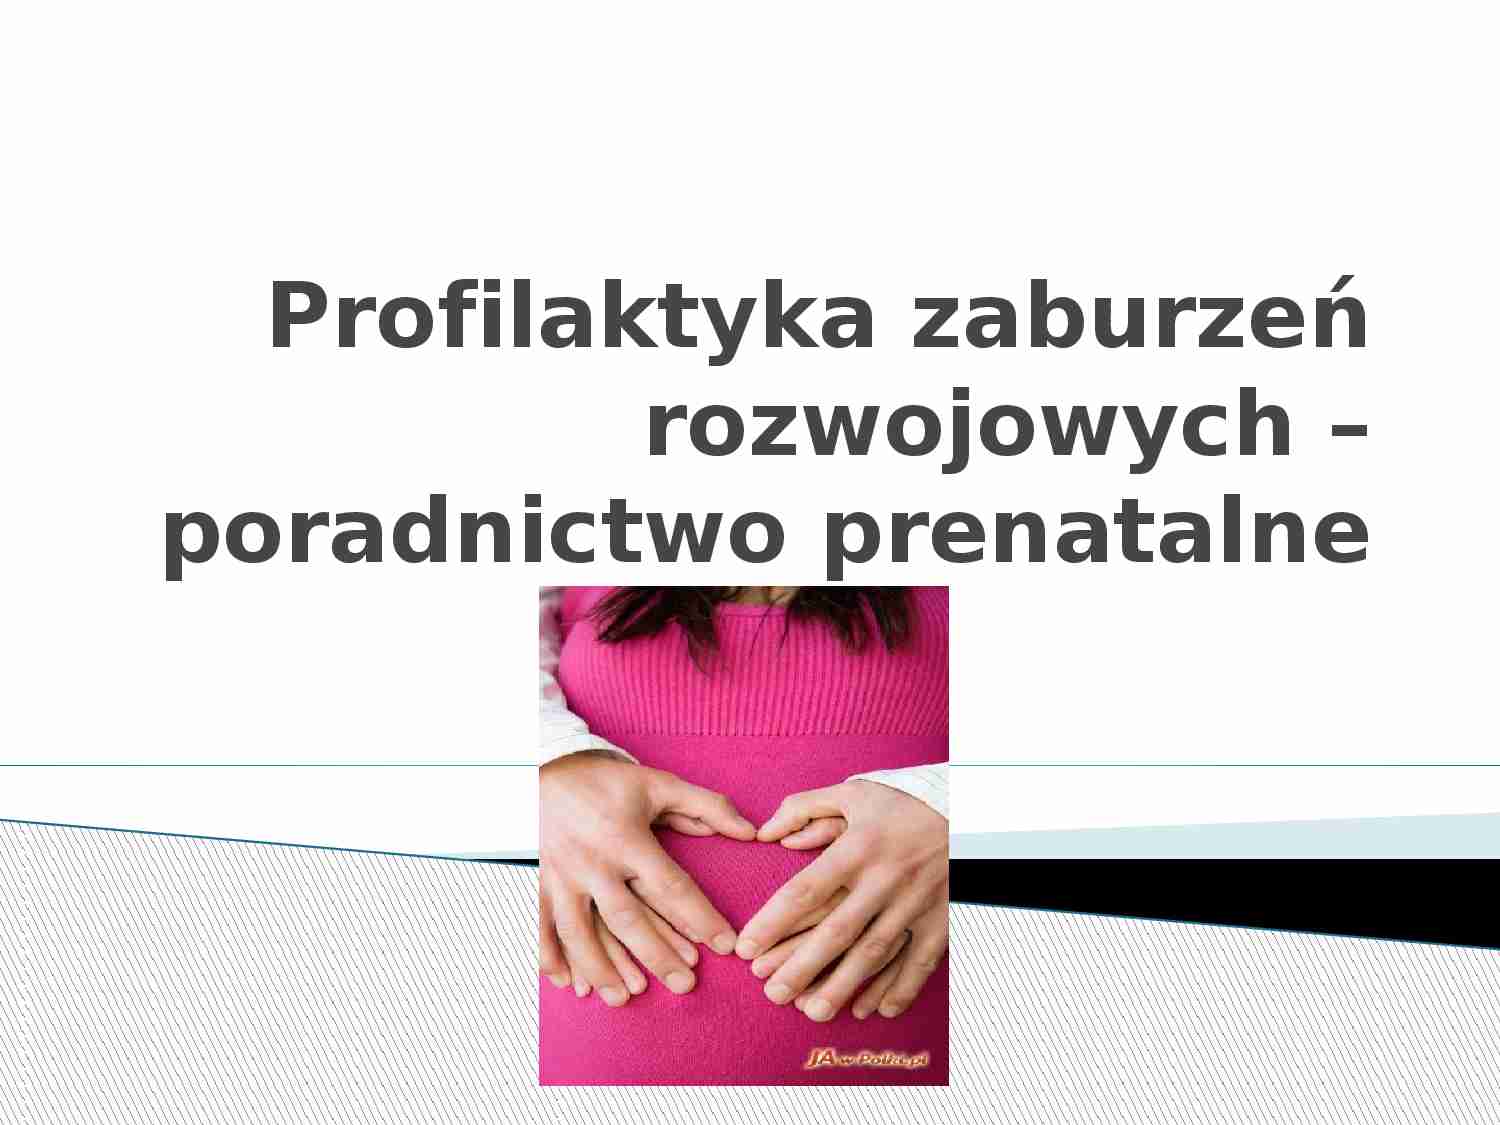 Profilaktyka zaburzeń rozwojowych - poradnictwo prenatalne - strona 1